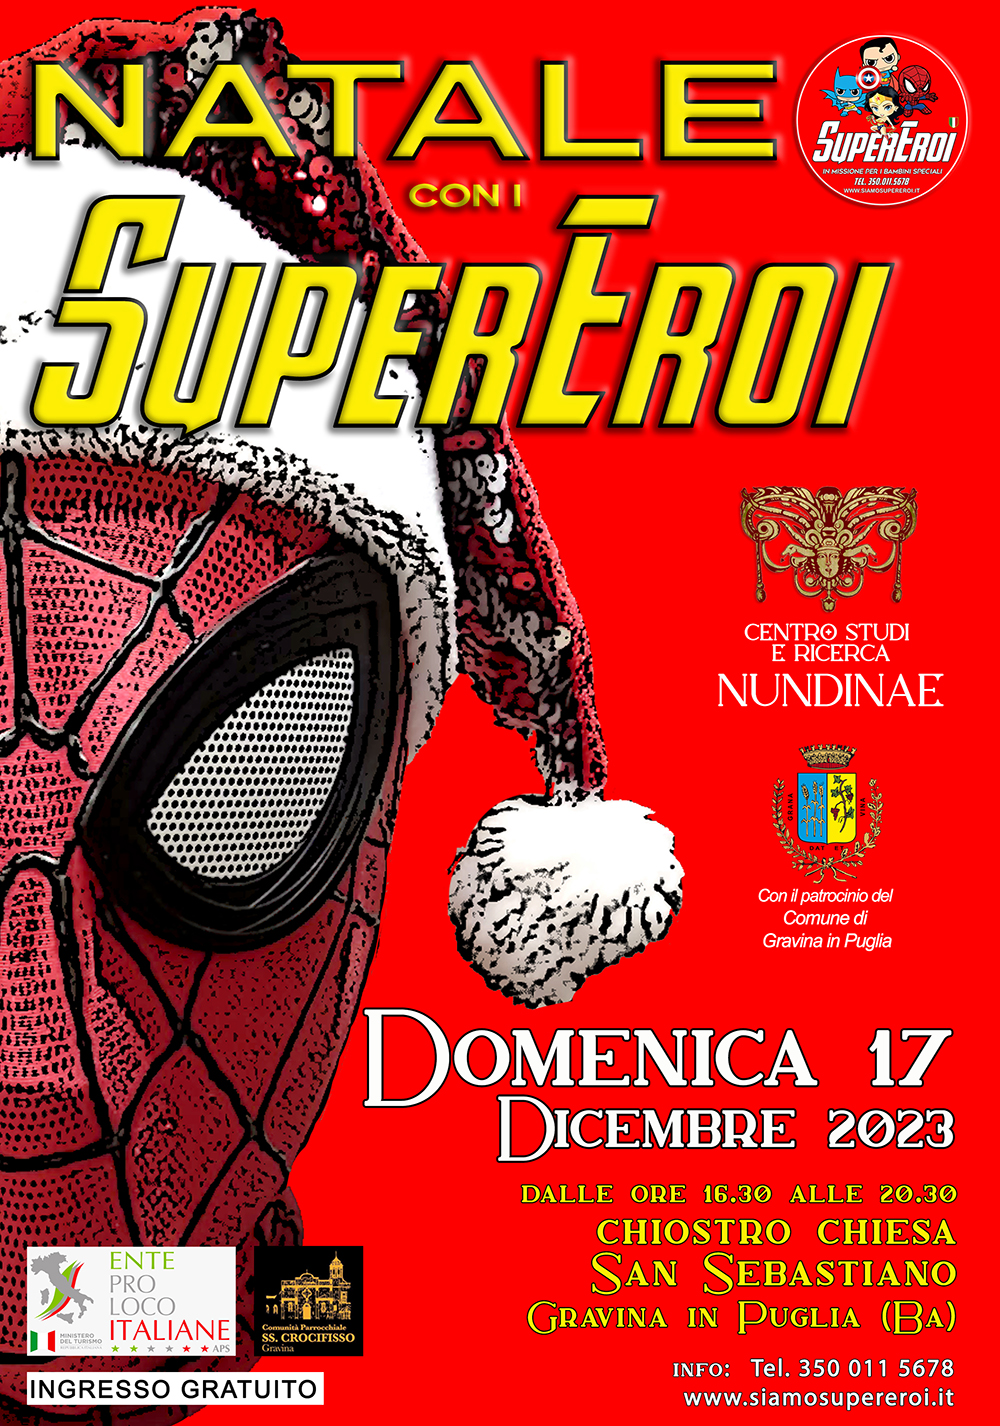 在普利亚格拉维纳的“与超级英雄的圣诞节”(BA):超级英雄与团结之间